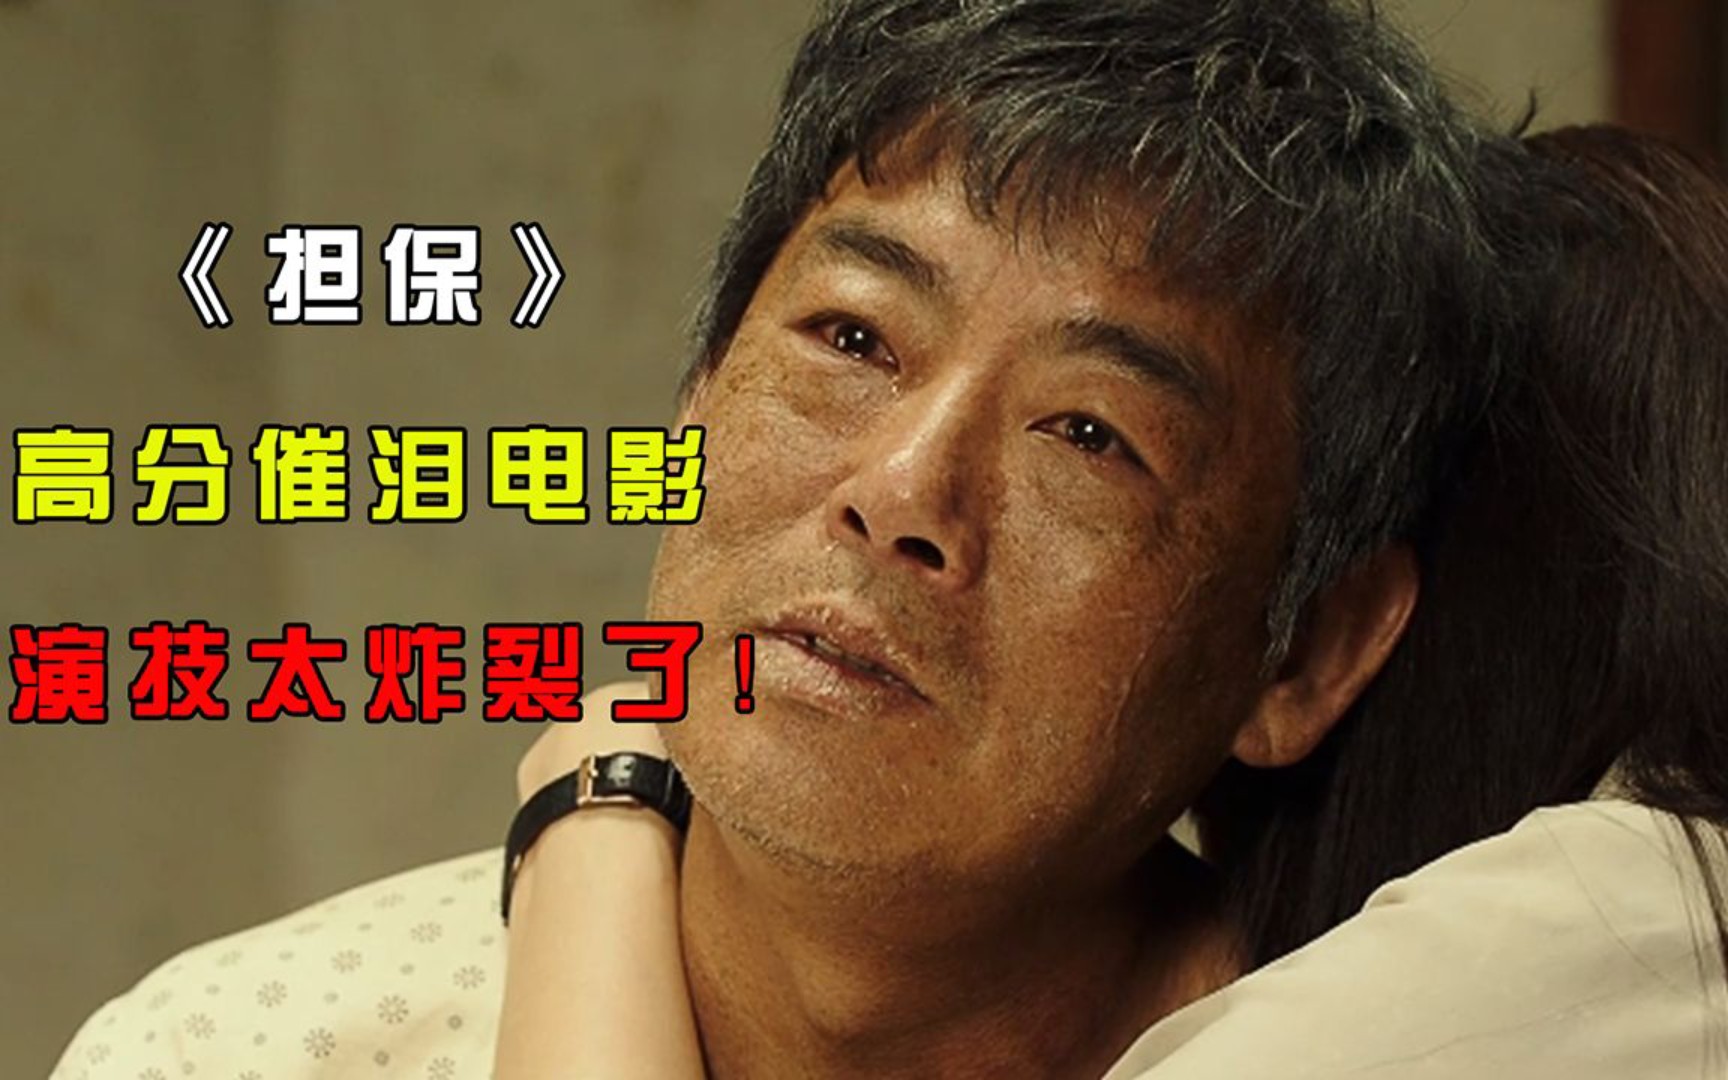 韩国催泪电影《担保》,十岁女孩被绑架,最后却认绑匪当爸爸